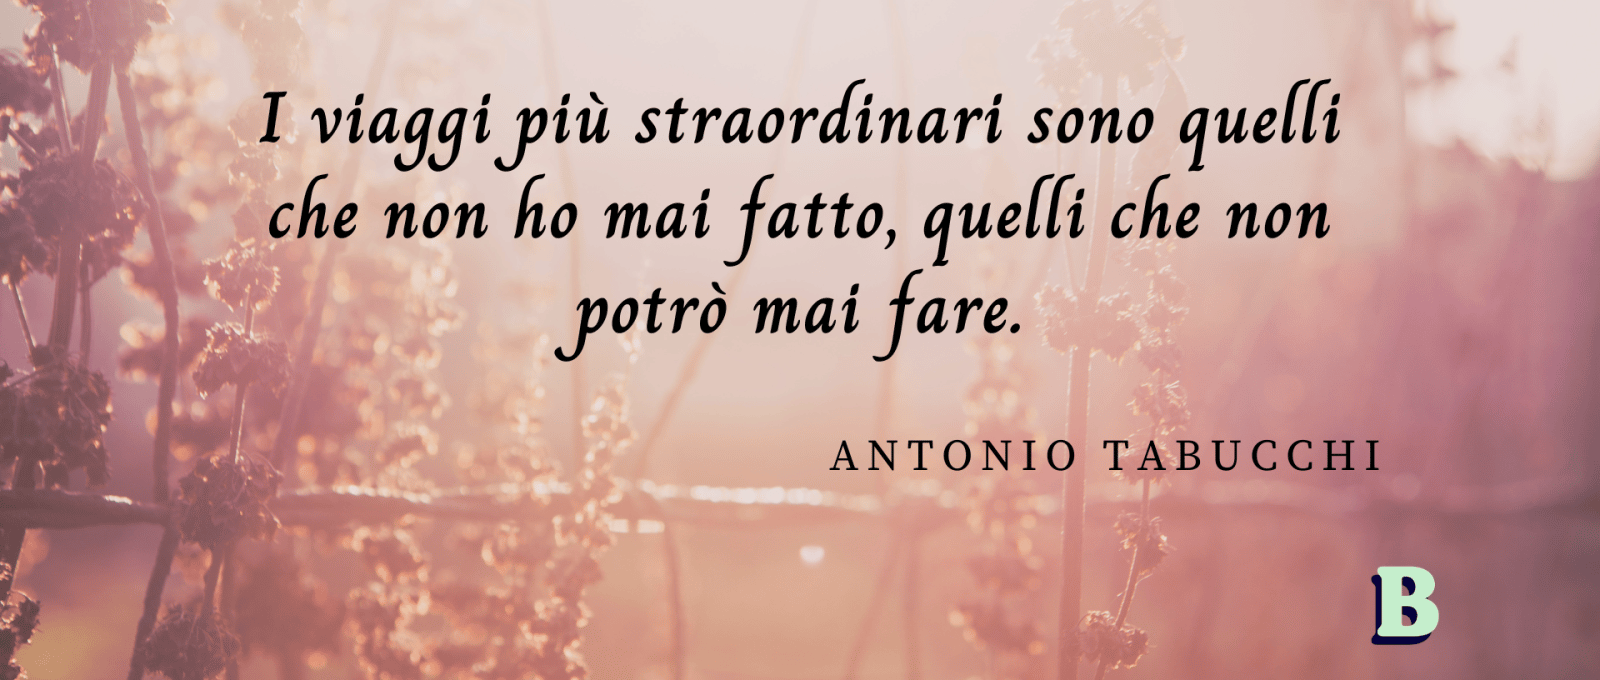 frasi Antonio Tabucchi